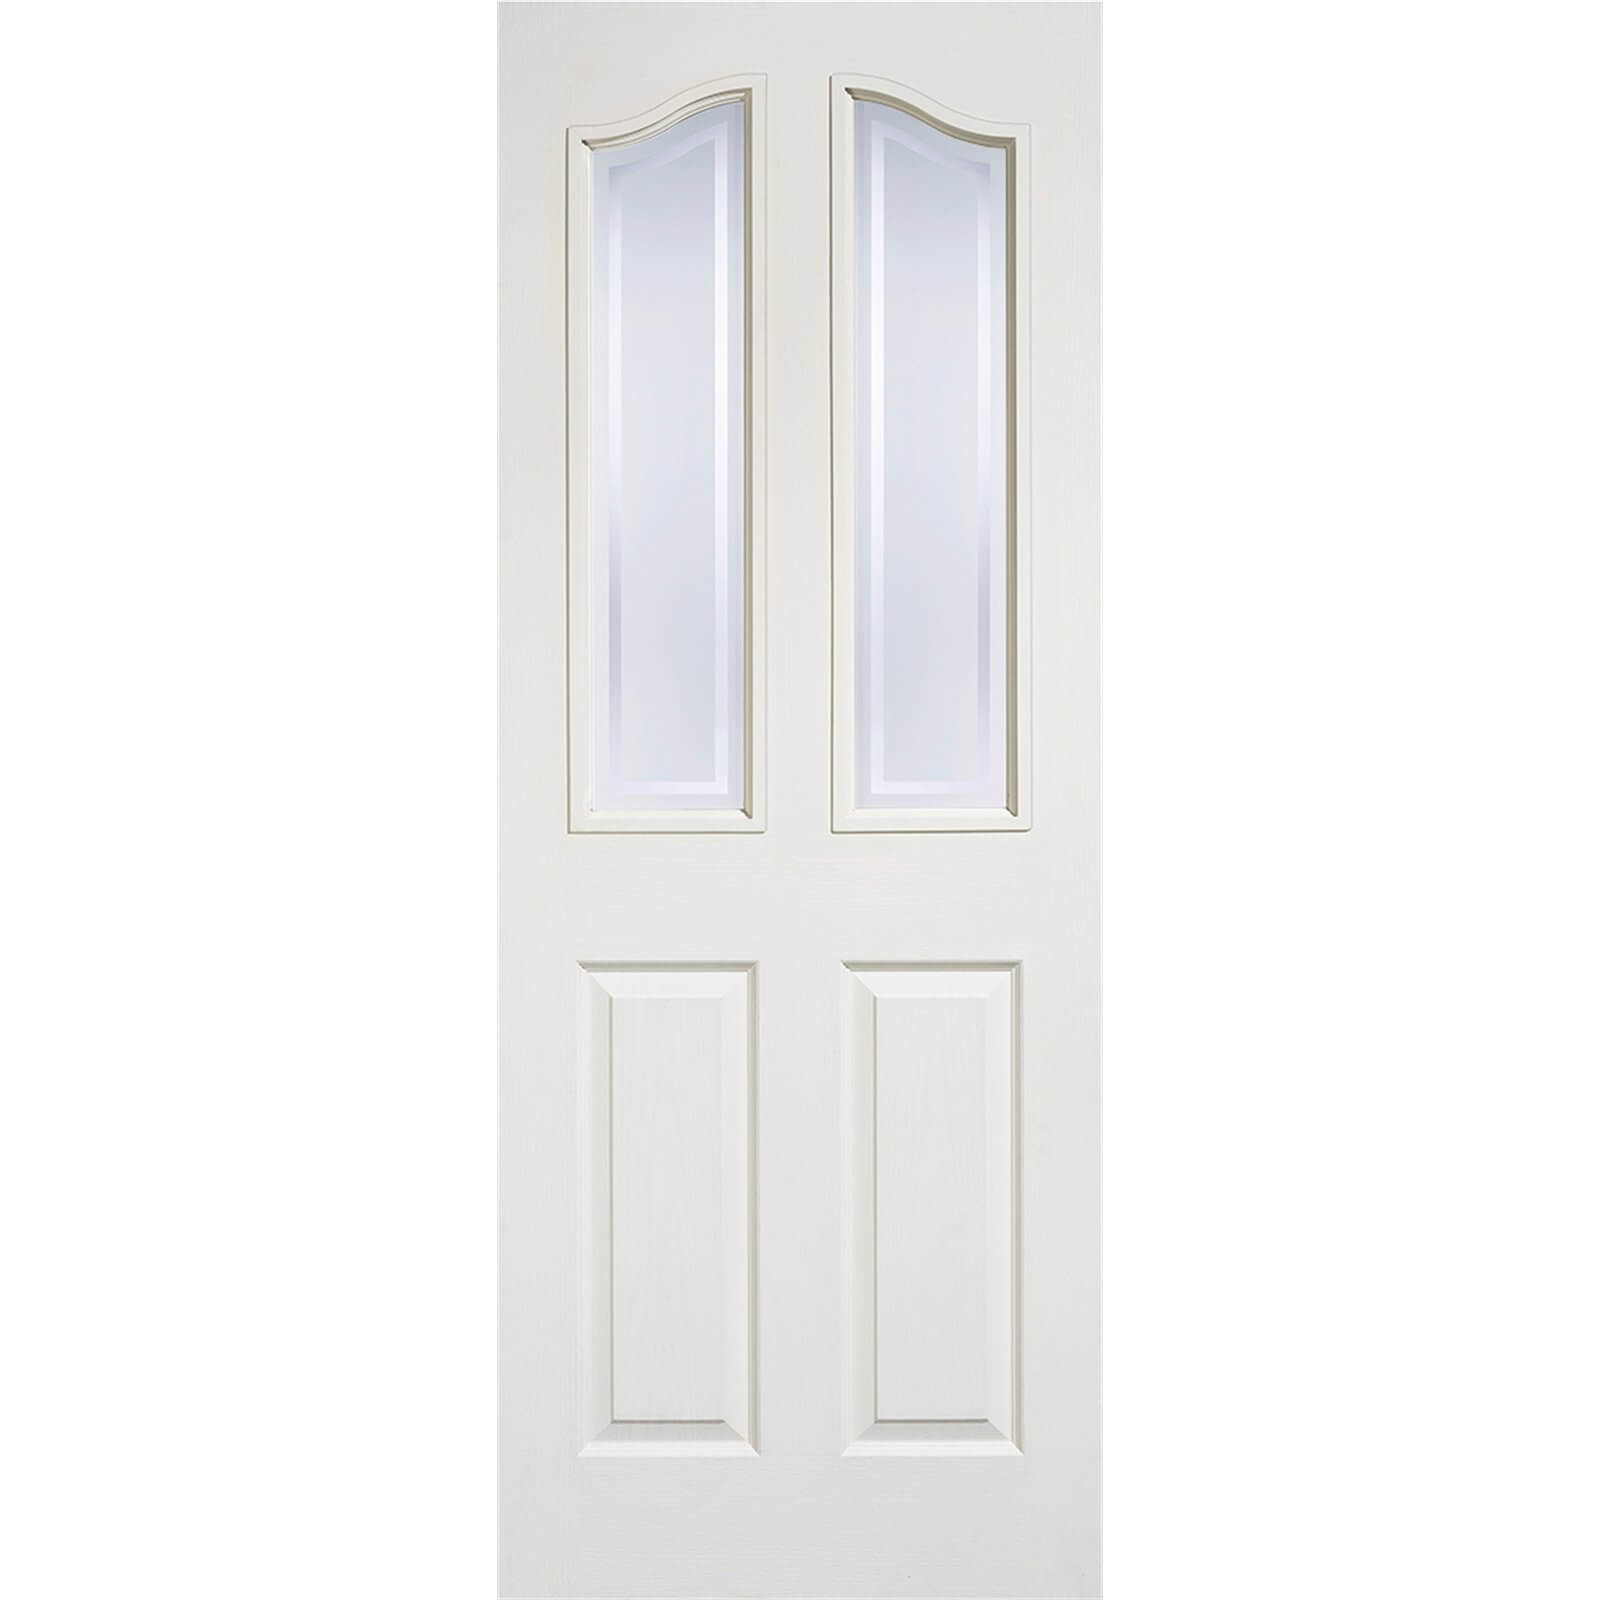 Mayfair Internal Primed White 2 Panel 2 Lite Door - 762 x 1981mm